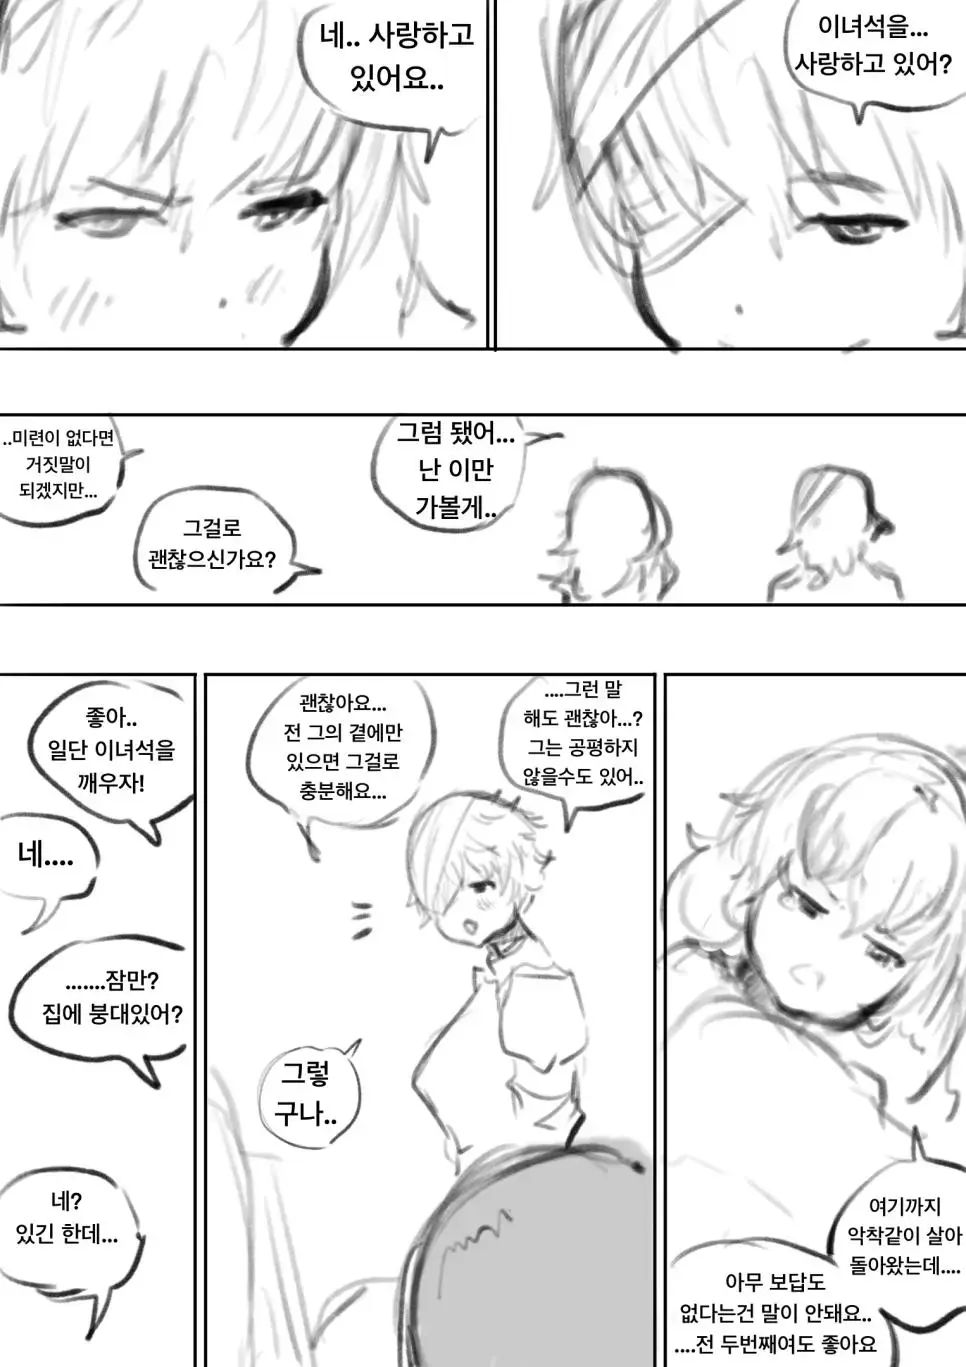 죽은 여자친구로 변신한 도플갱어 만화 | mbong.kr 엠봉